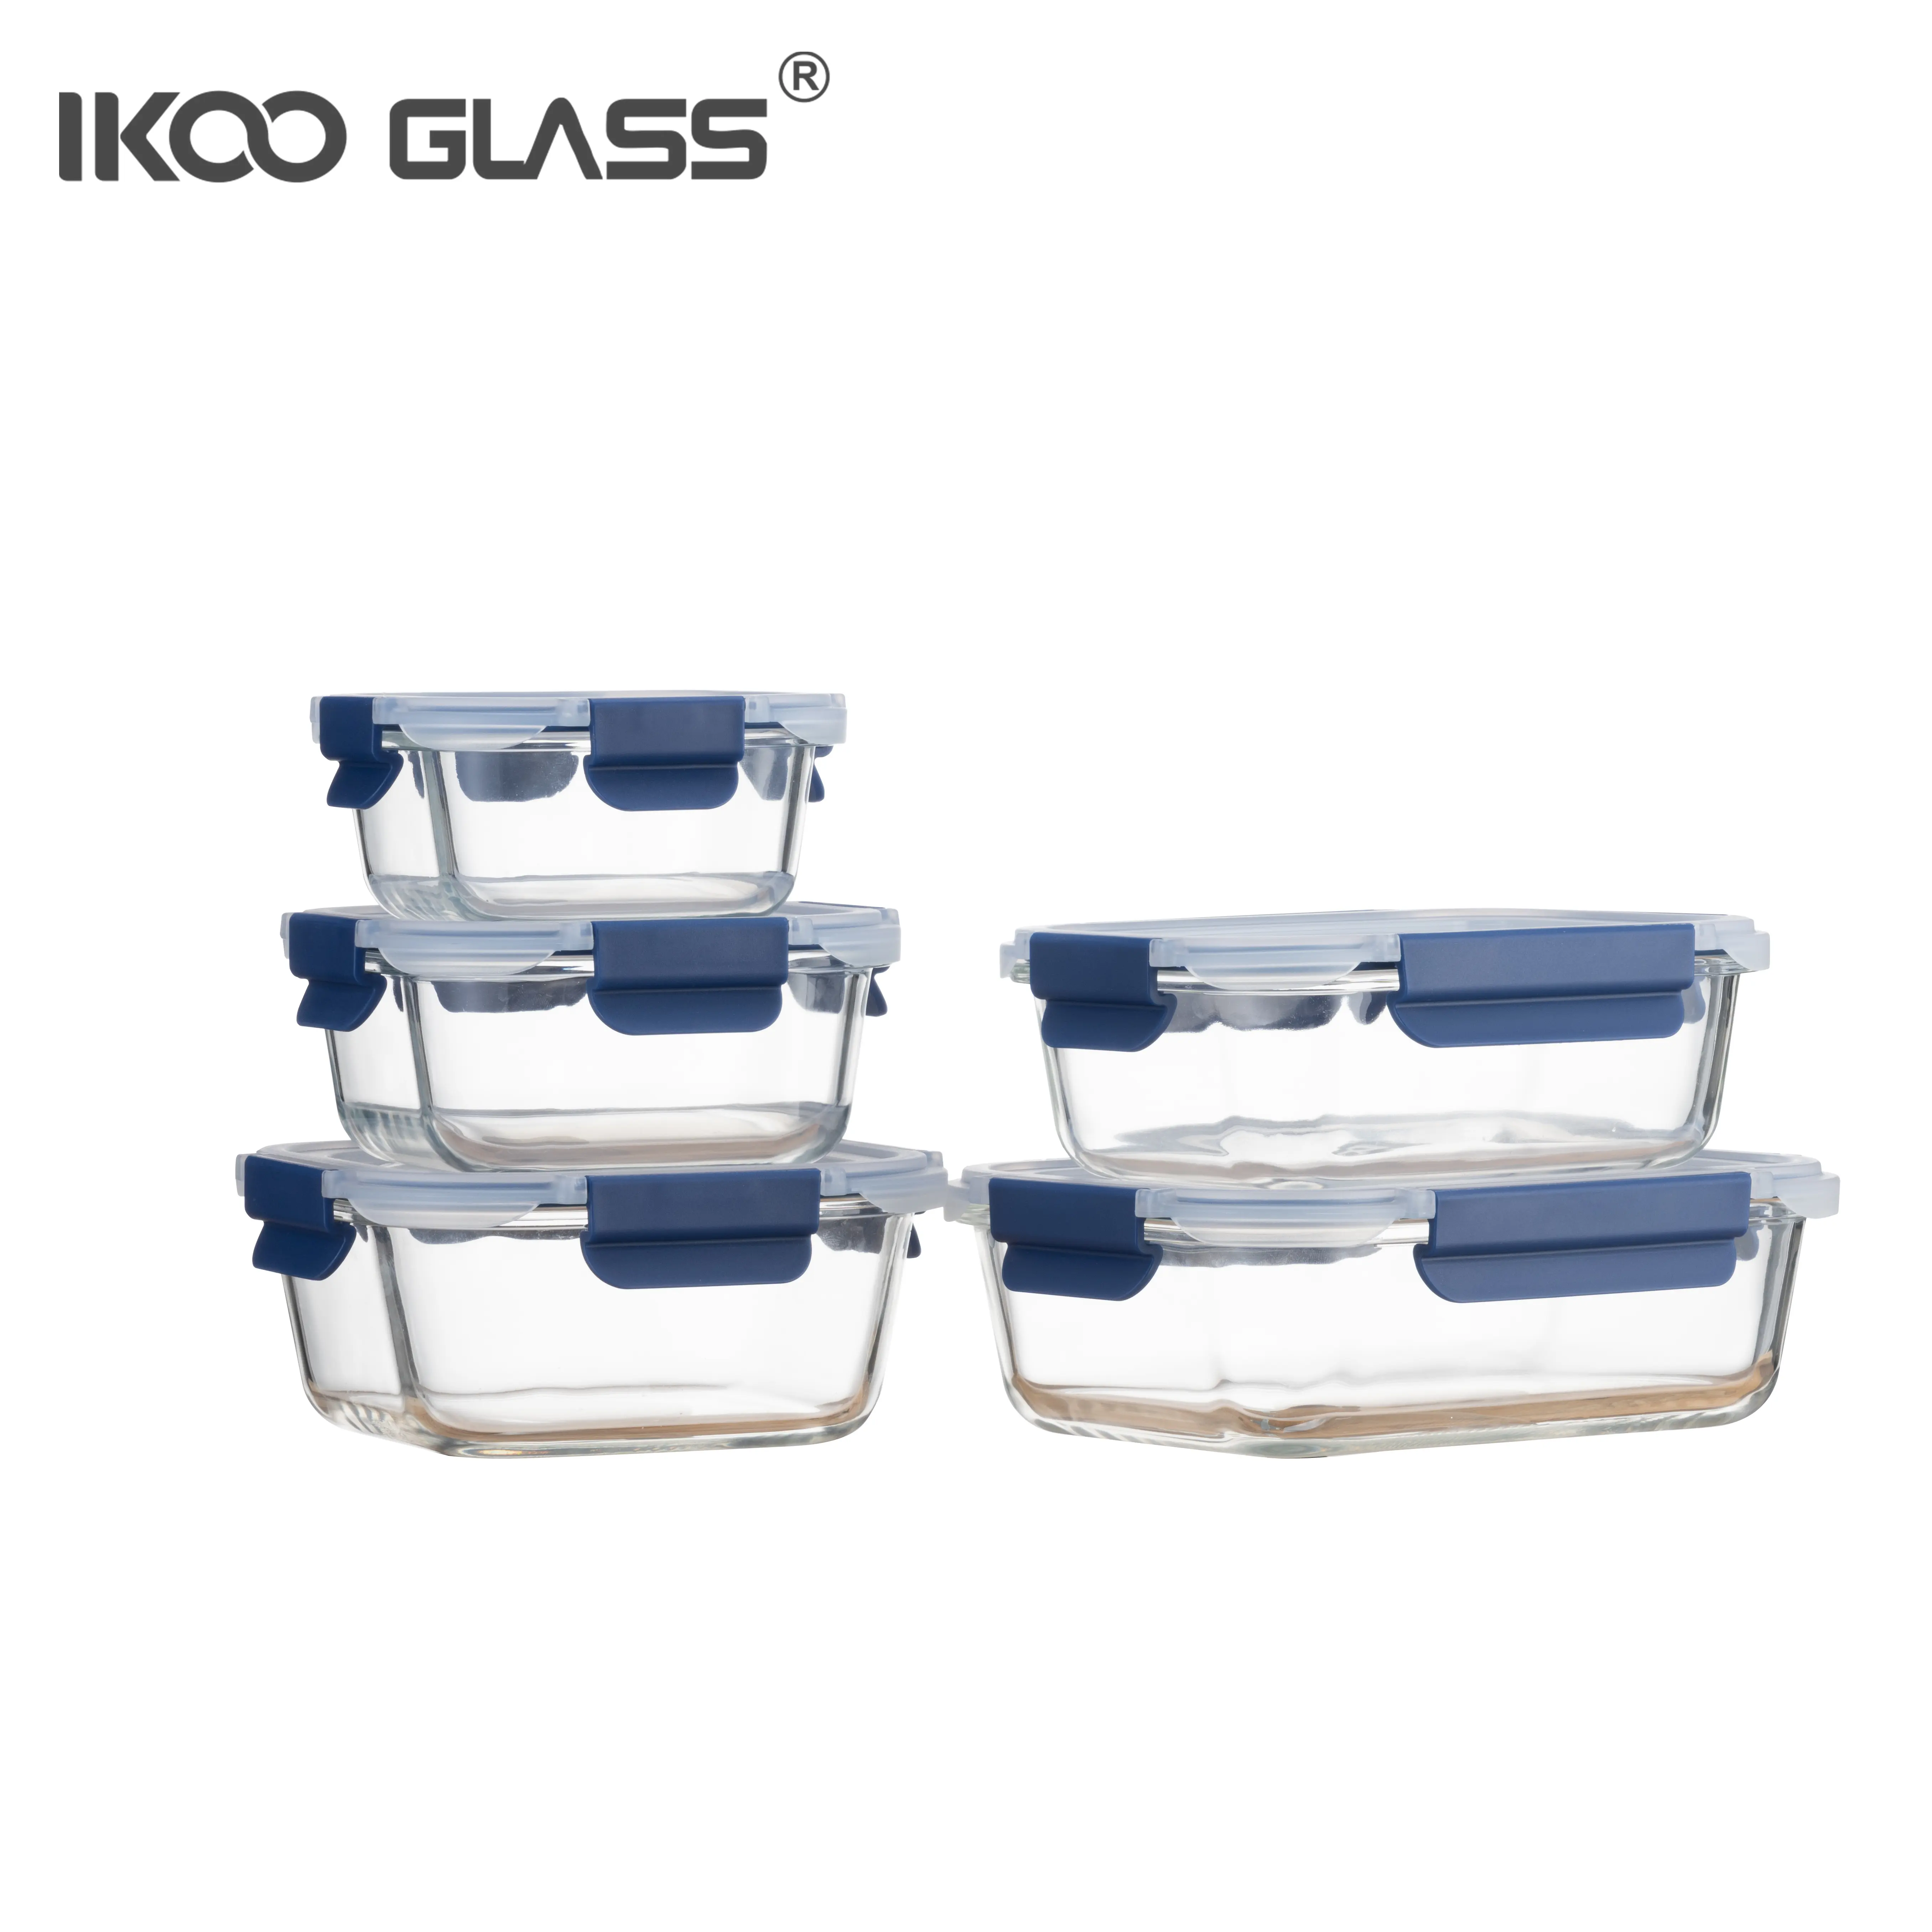 IKOO Lebensmittel behälter mit hohem Boro silikat glas Boro silikat glas Lunchbox Lebensmittel behälter